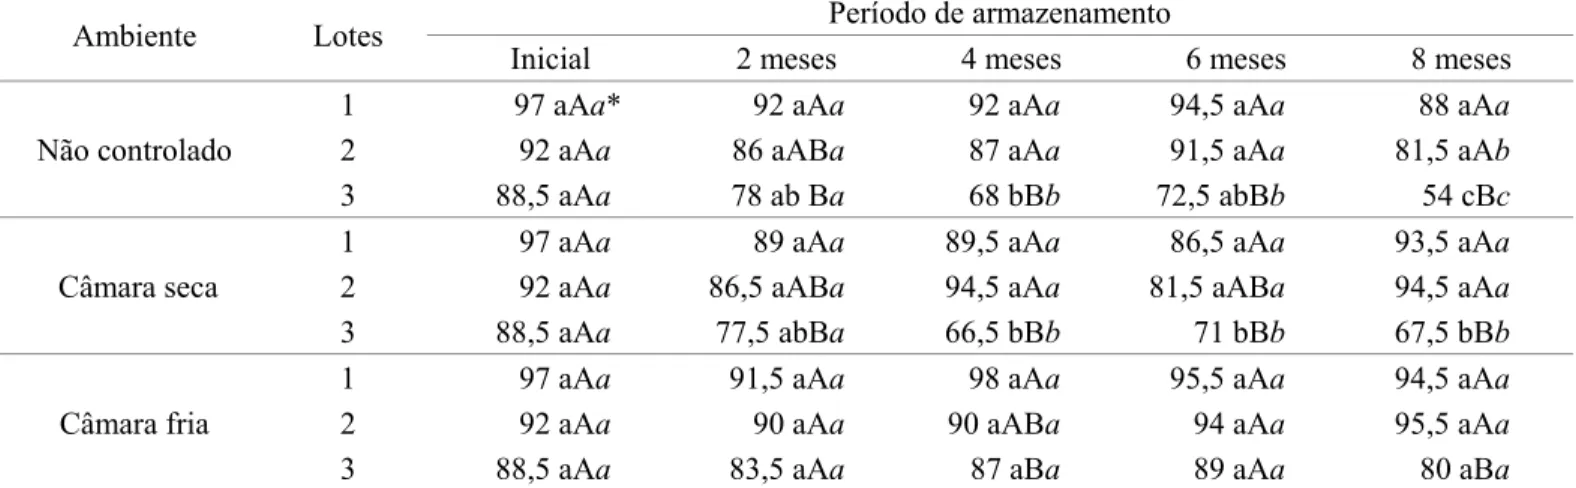 TABELA 2. Resultados médios de germinação, em porcentagem, para os três lotes de sementes de soja do cultivar  TMG113-RR, durante 5 épocas de avaliação, armazenados em diferentes condições ambientais.